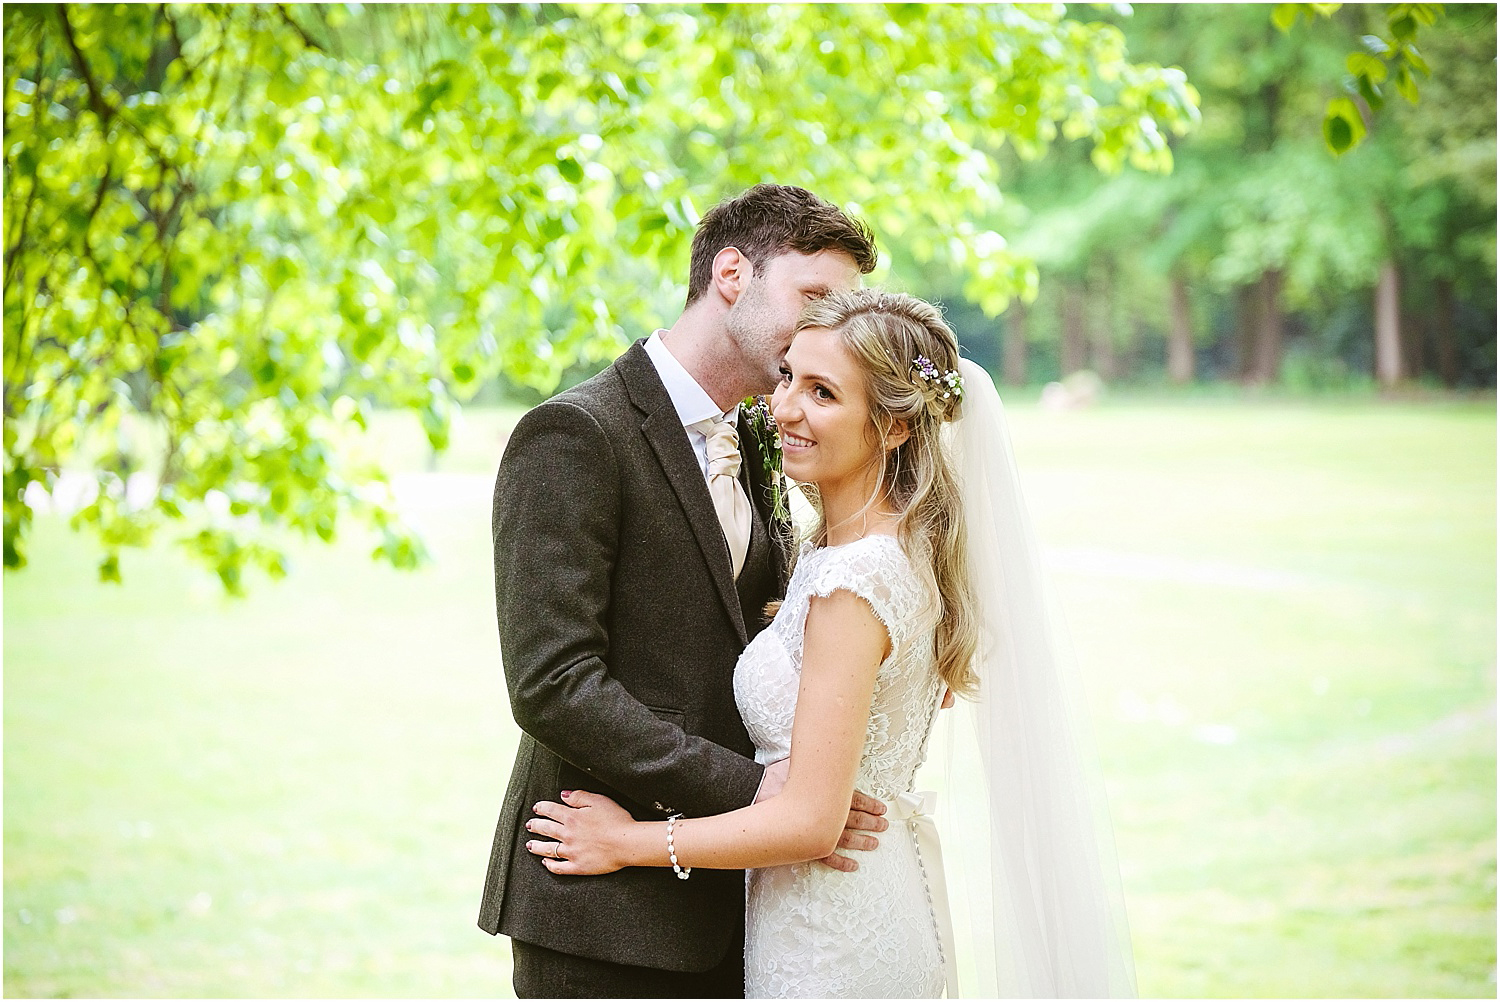 Beamish Hall wedding photography - Laura and Richard_0079.jpg